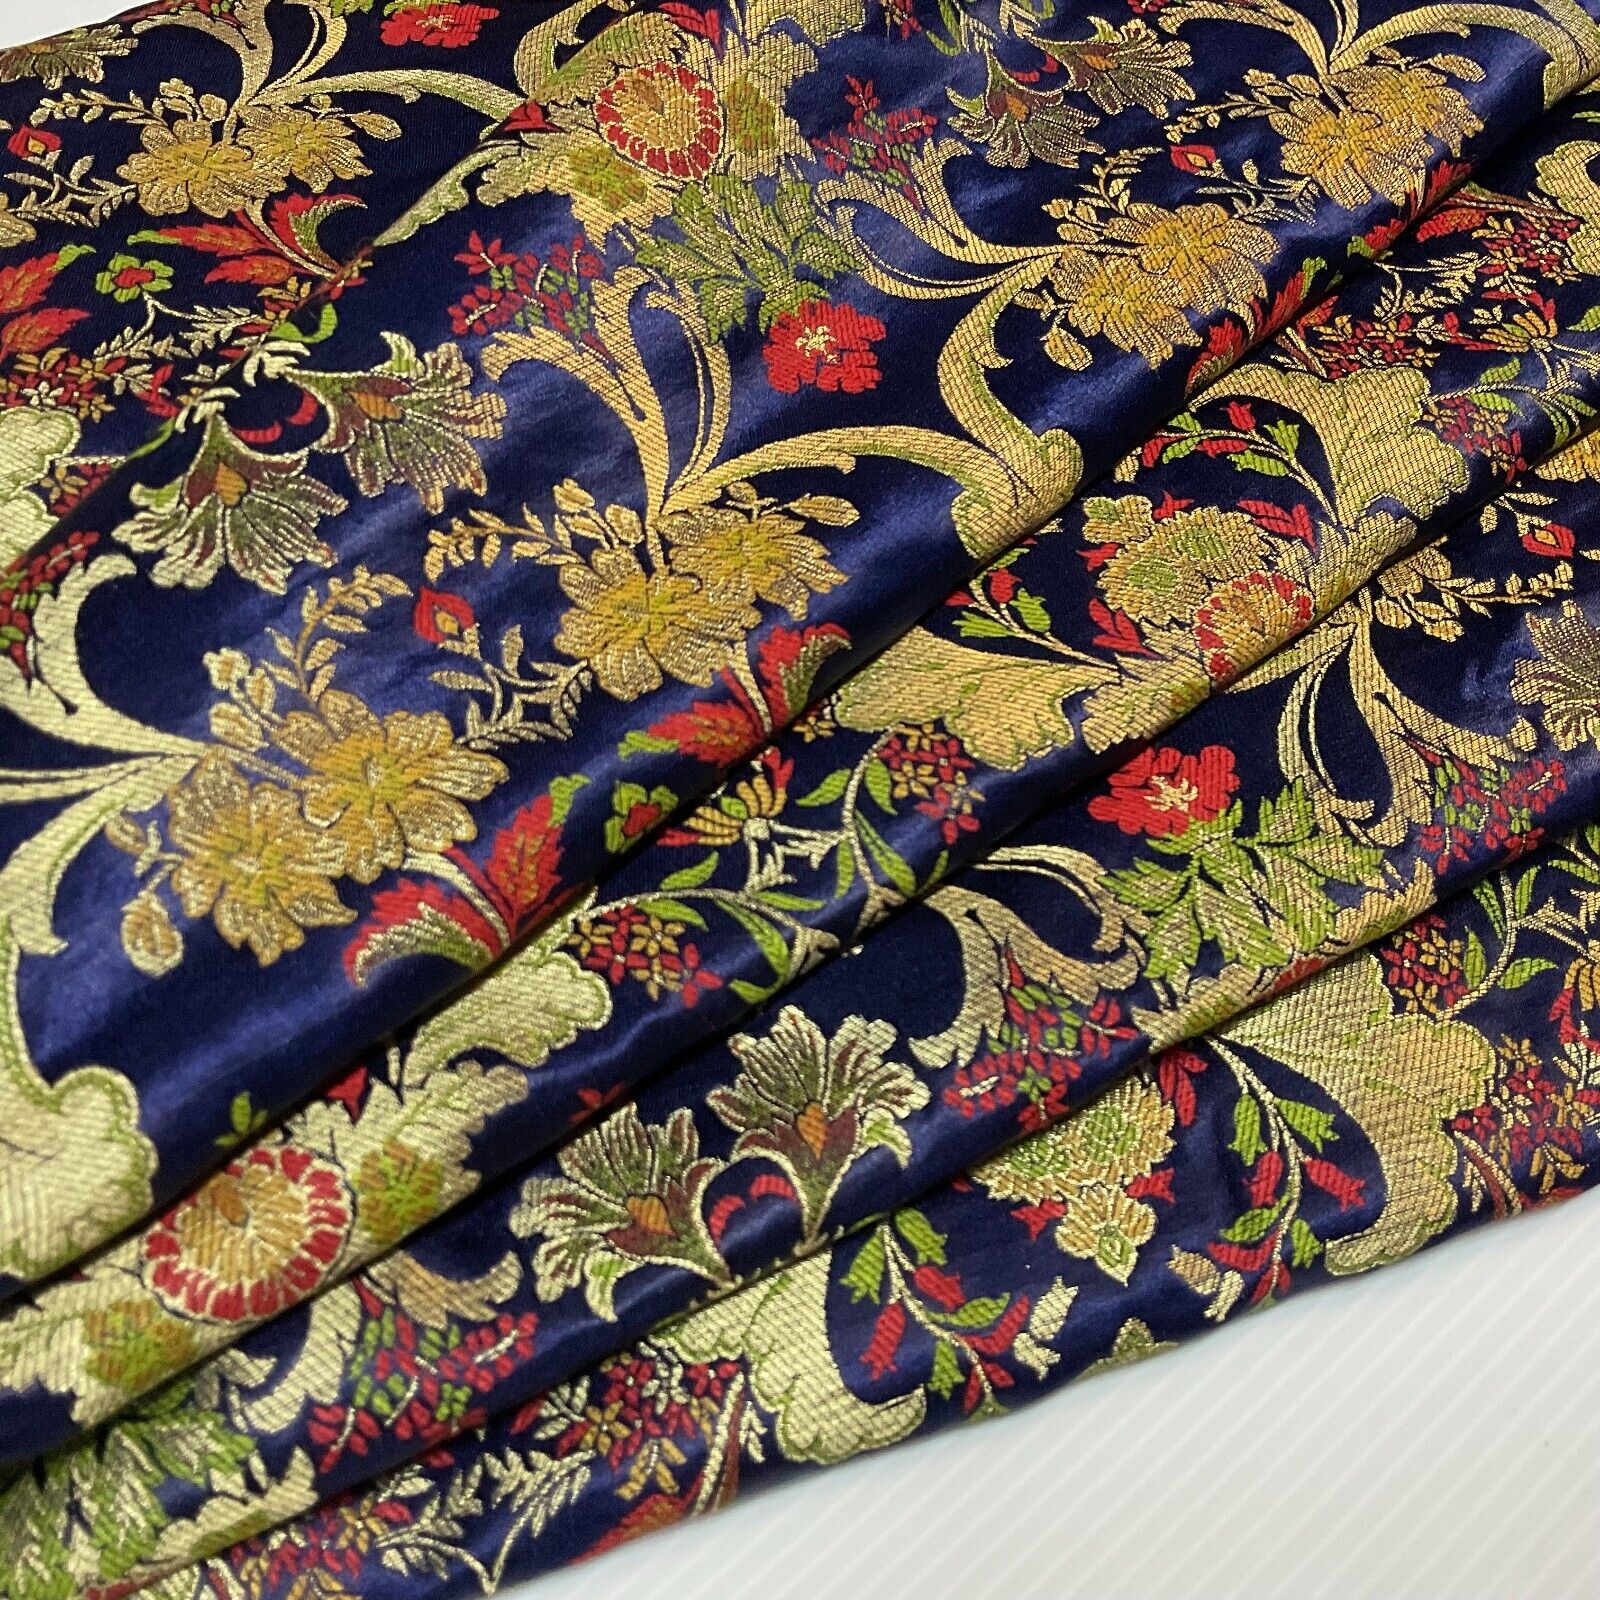 Ornamental Ornate Floral Silk Kingkhab wedding Brocade Fabric 111cm wide M1734